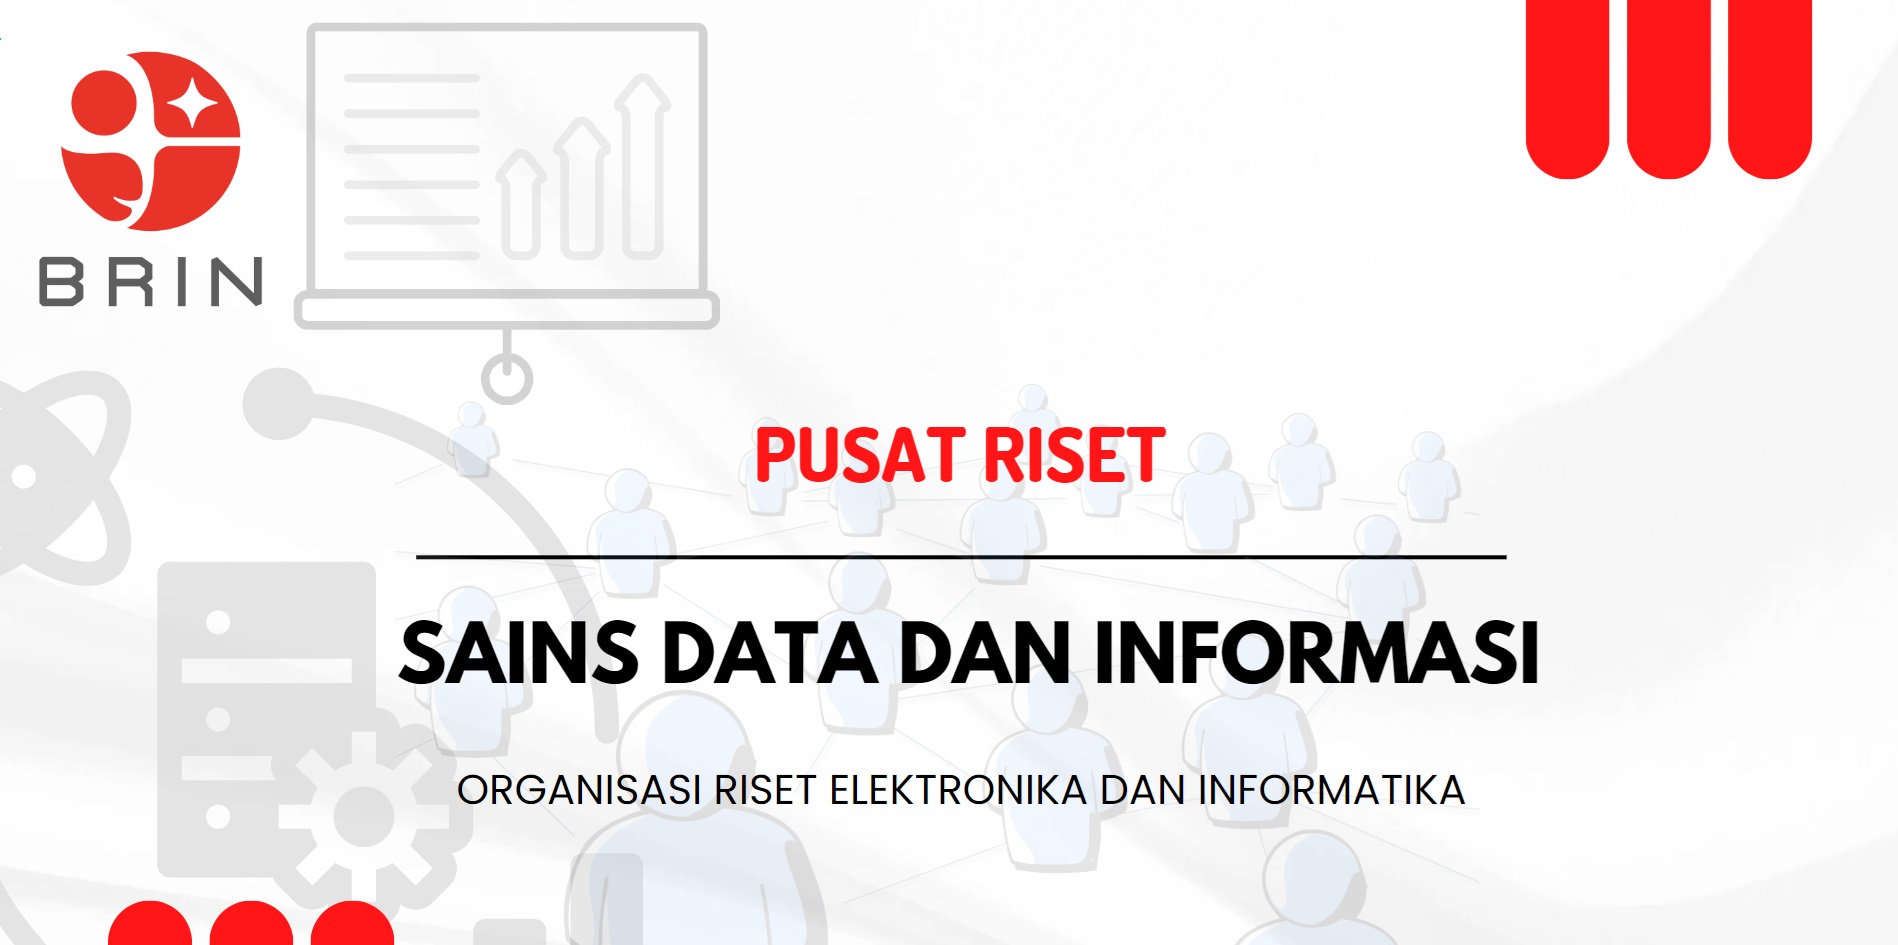 Riset - Interaksi Manusia Komputer dan Visualisasi - Data analytic dan visualisasi kegiatan riset di PR Sains Data dan Informasi BRIN